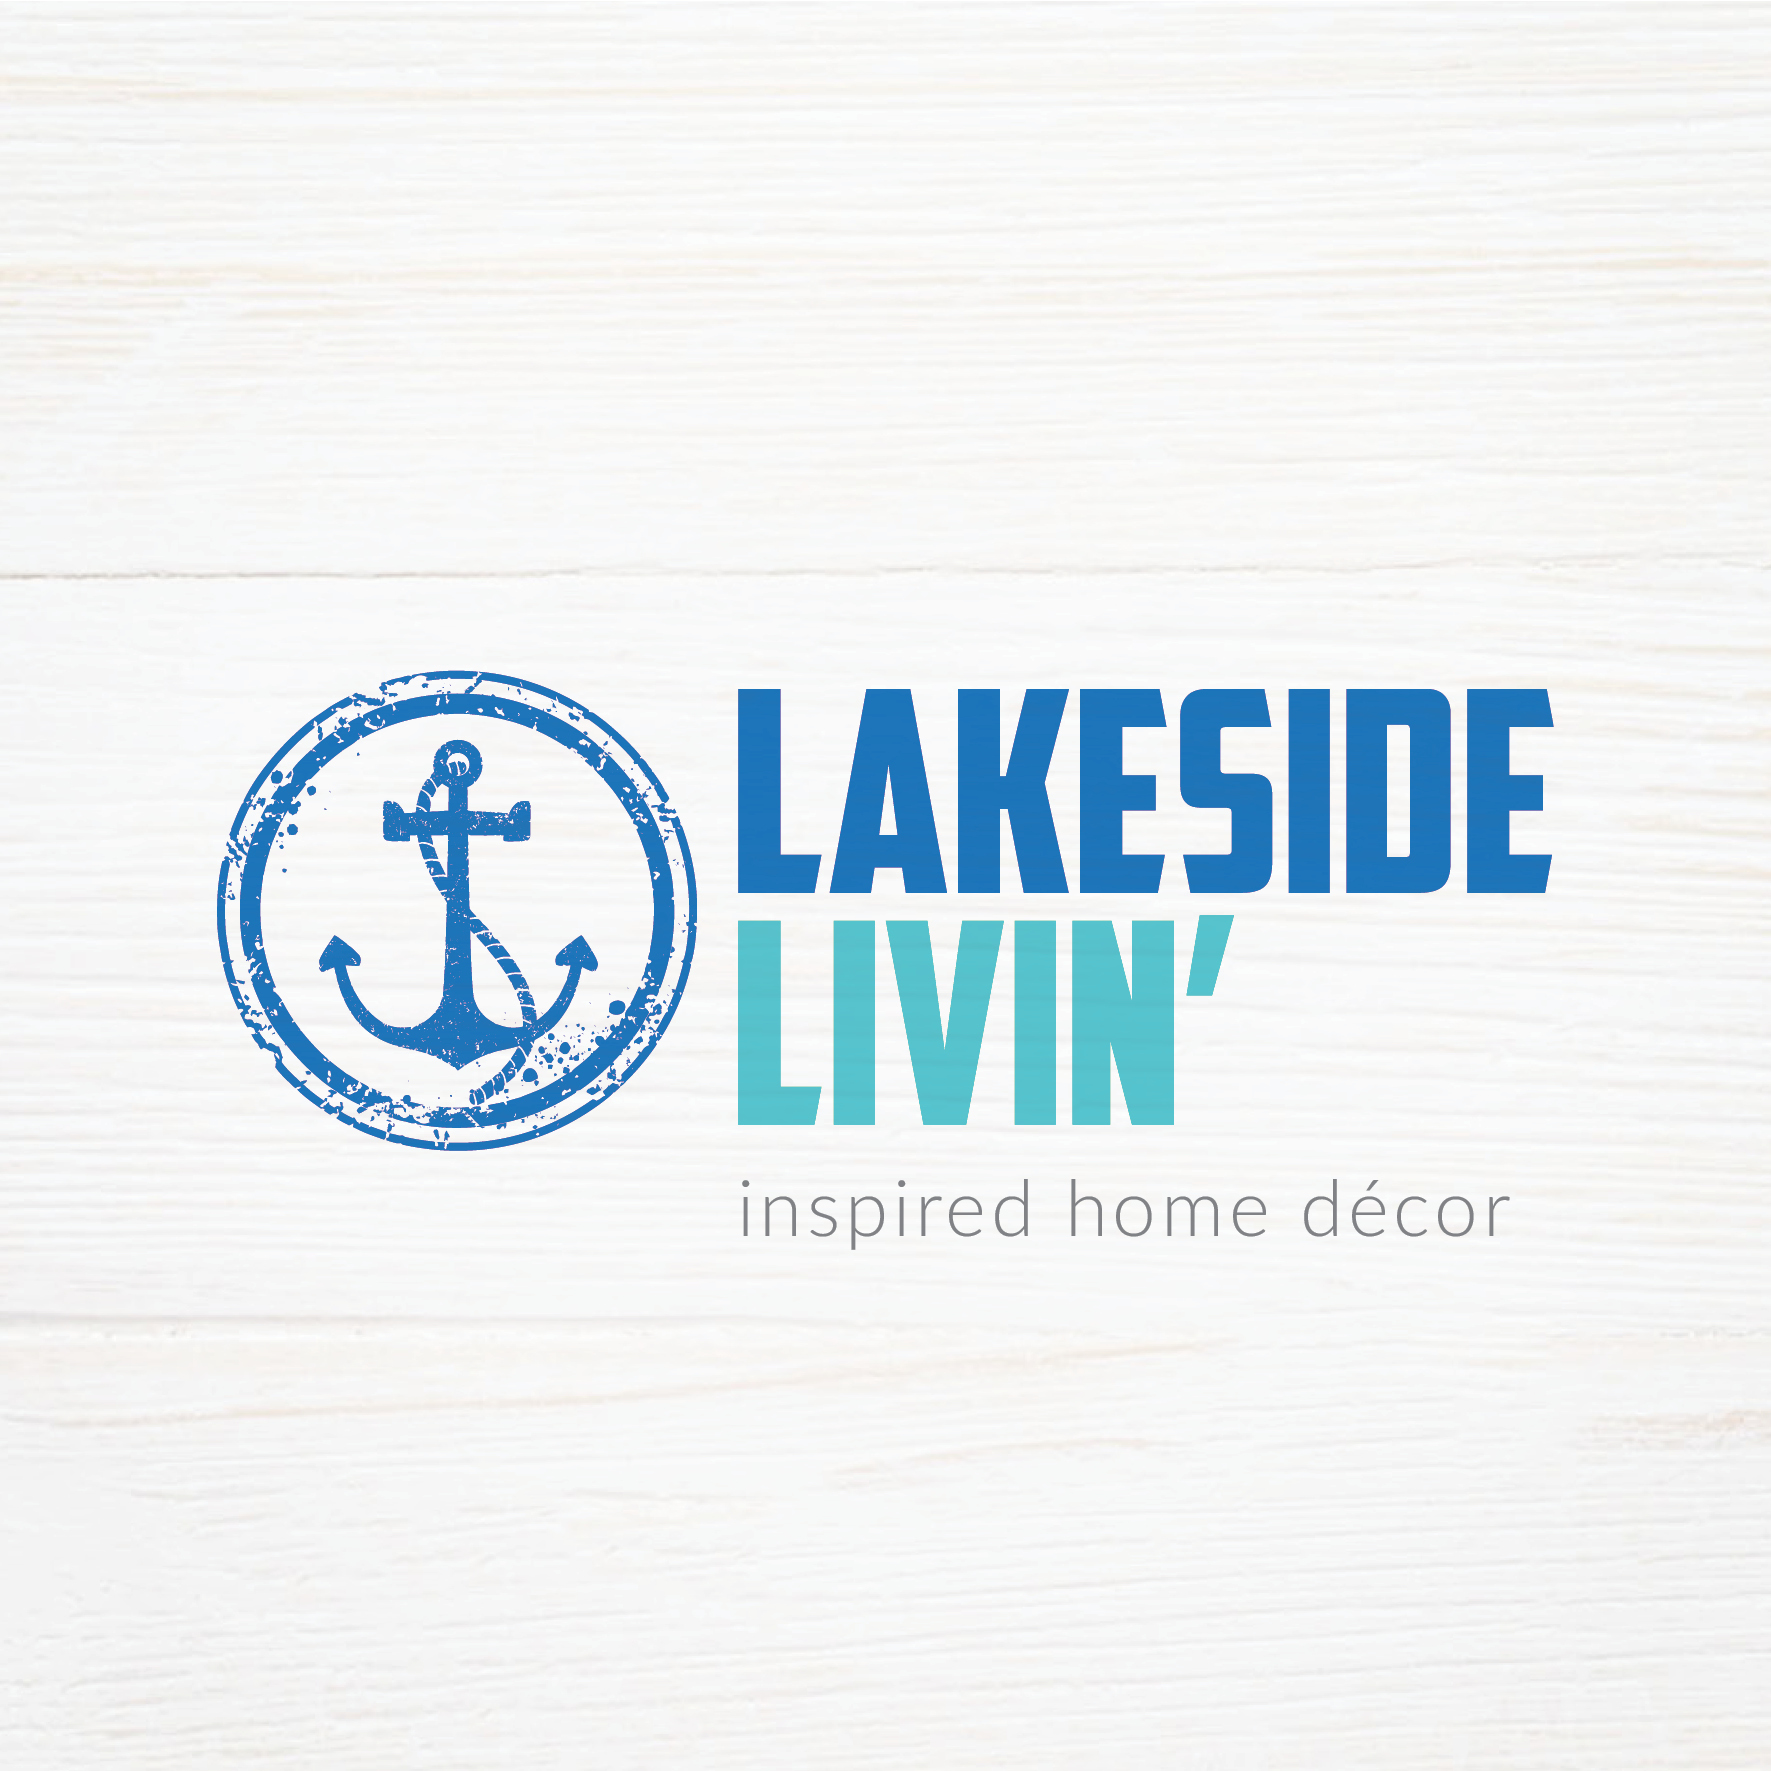 Lakeside Livin'